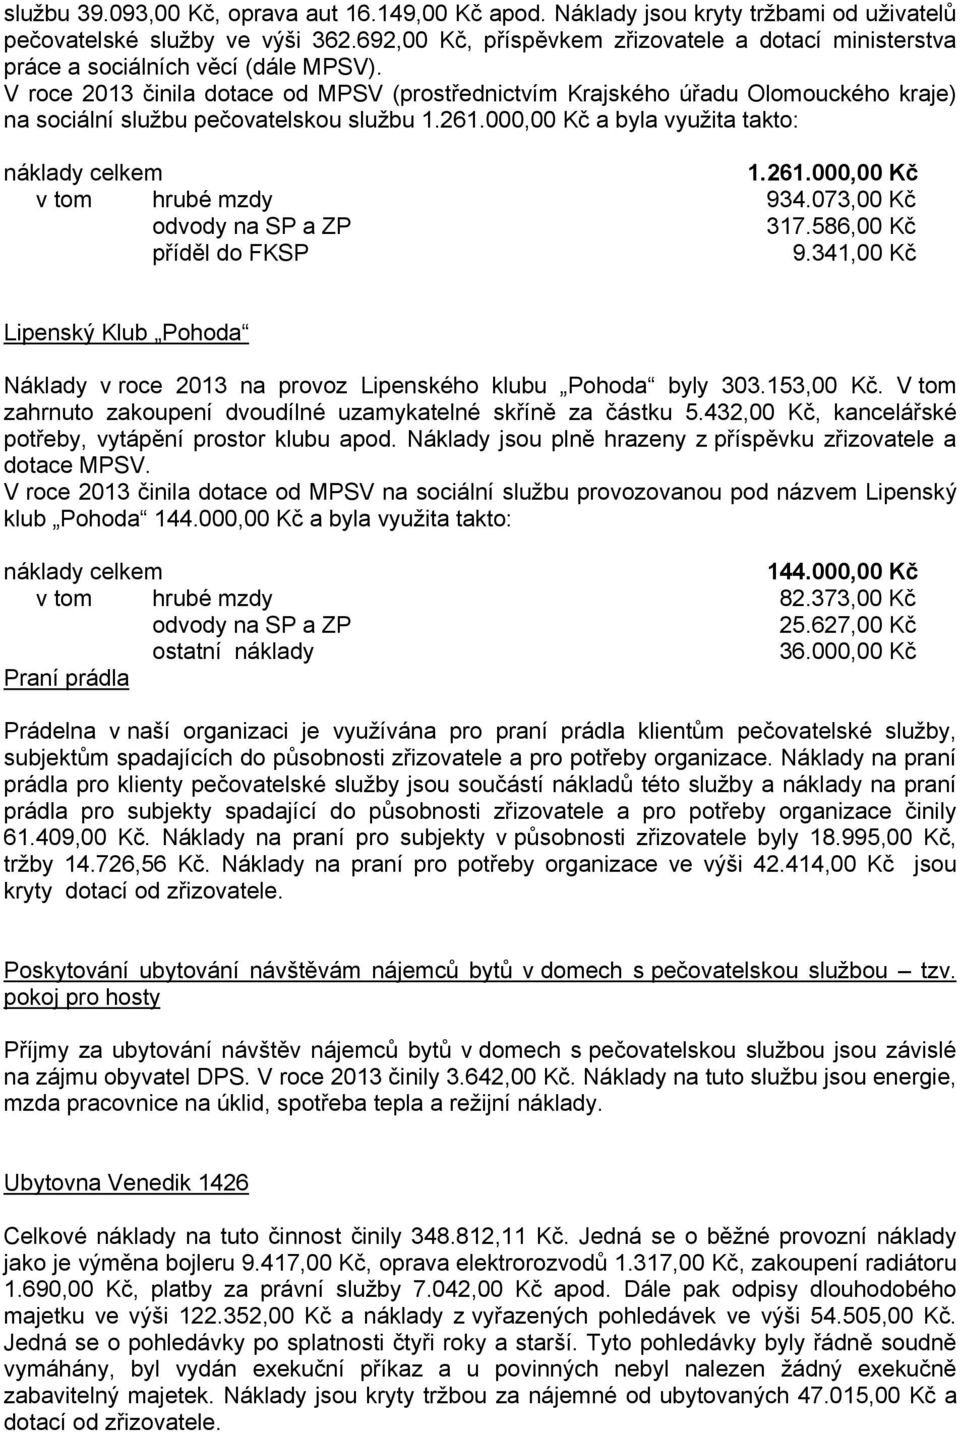 V roce 2013 činila dotace od MPSV (prostřednictvím Krajského úřadu Olomouckého kraje) na sociální službu pečovatelskou službu 1.261.000,00 Kč a byla využita takto: náklady celkem 1.261.000,00 Kč v tom hrubé mzdy 934.